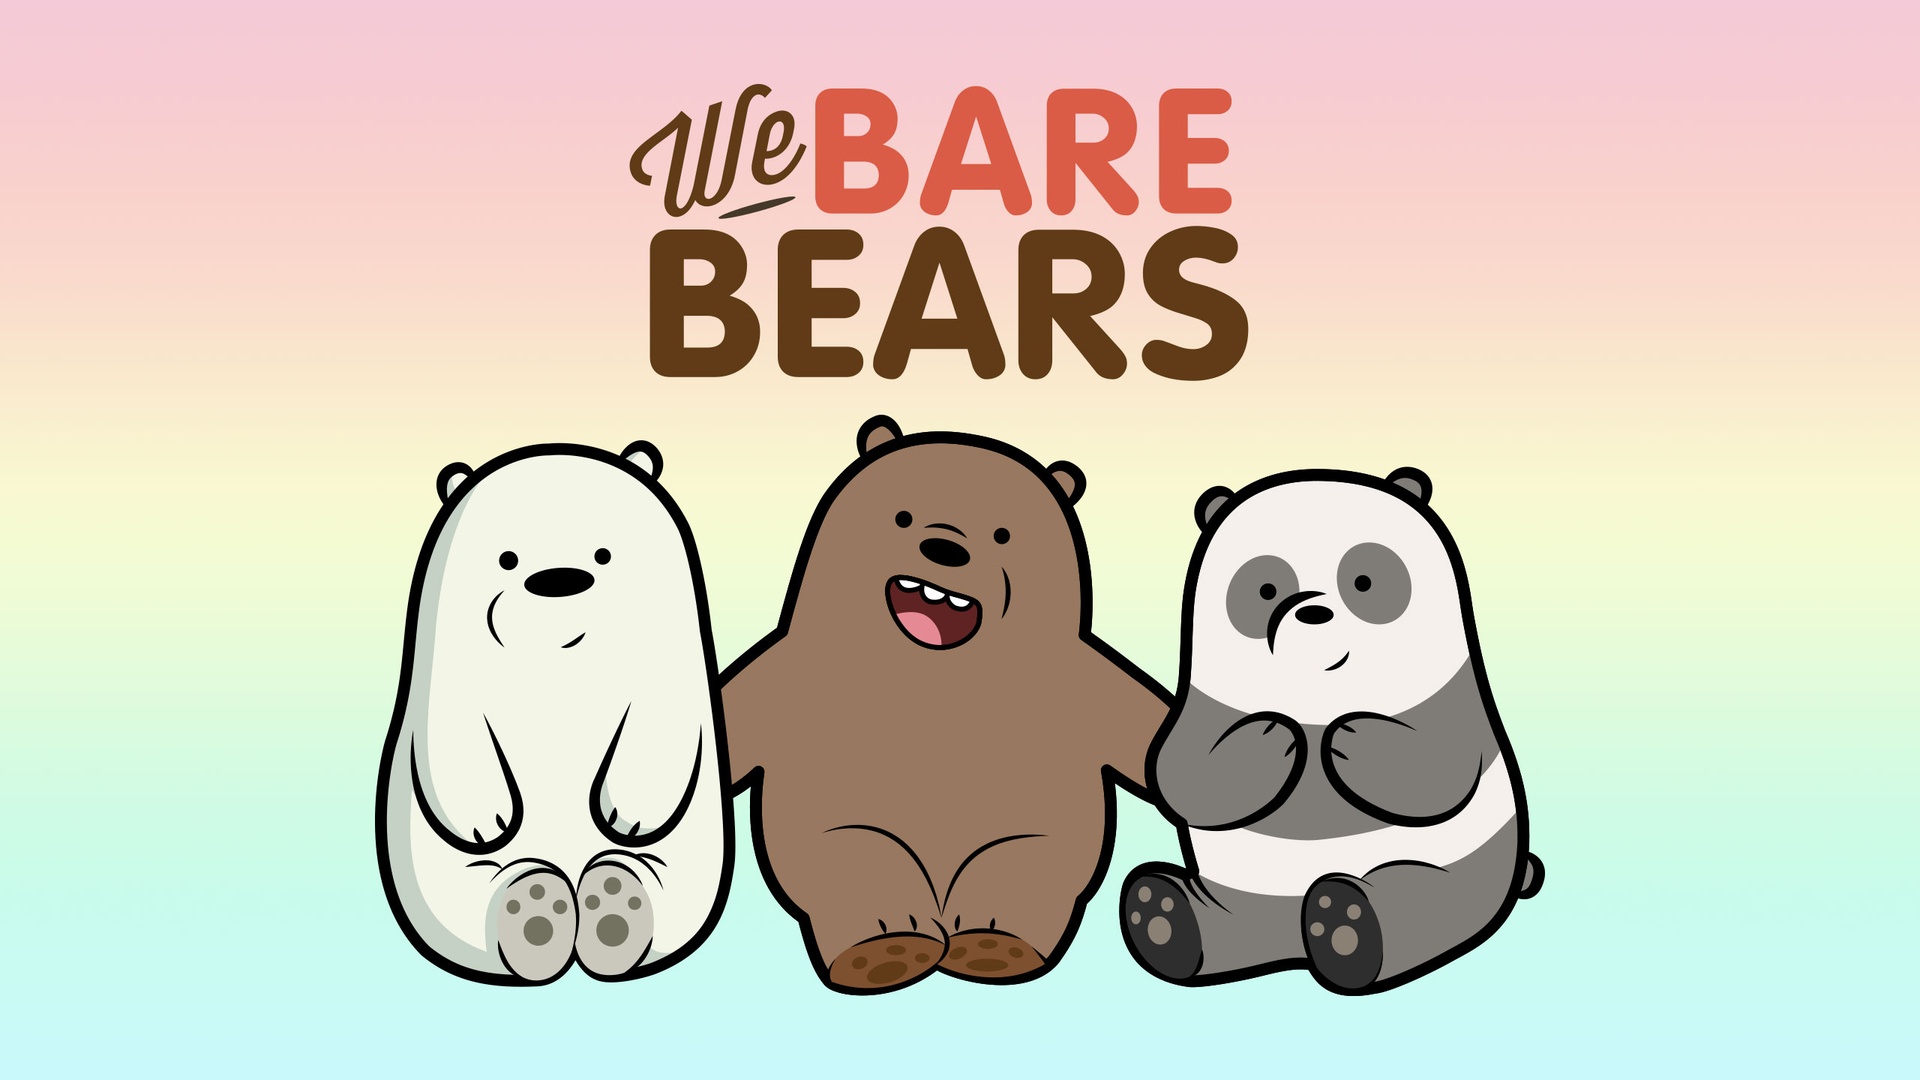 咱们裸熊 we bears壁纸【3】